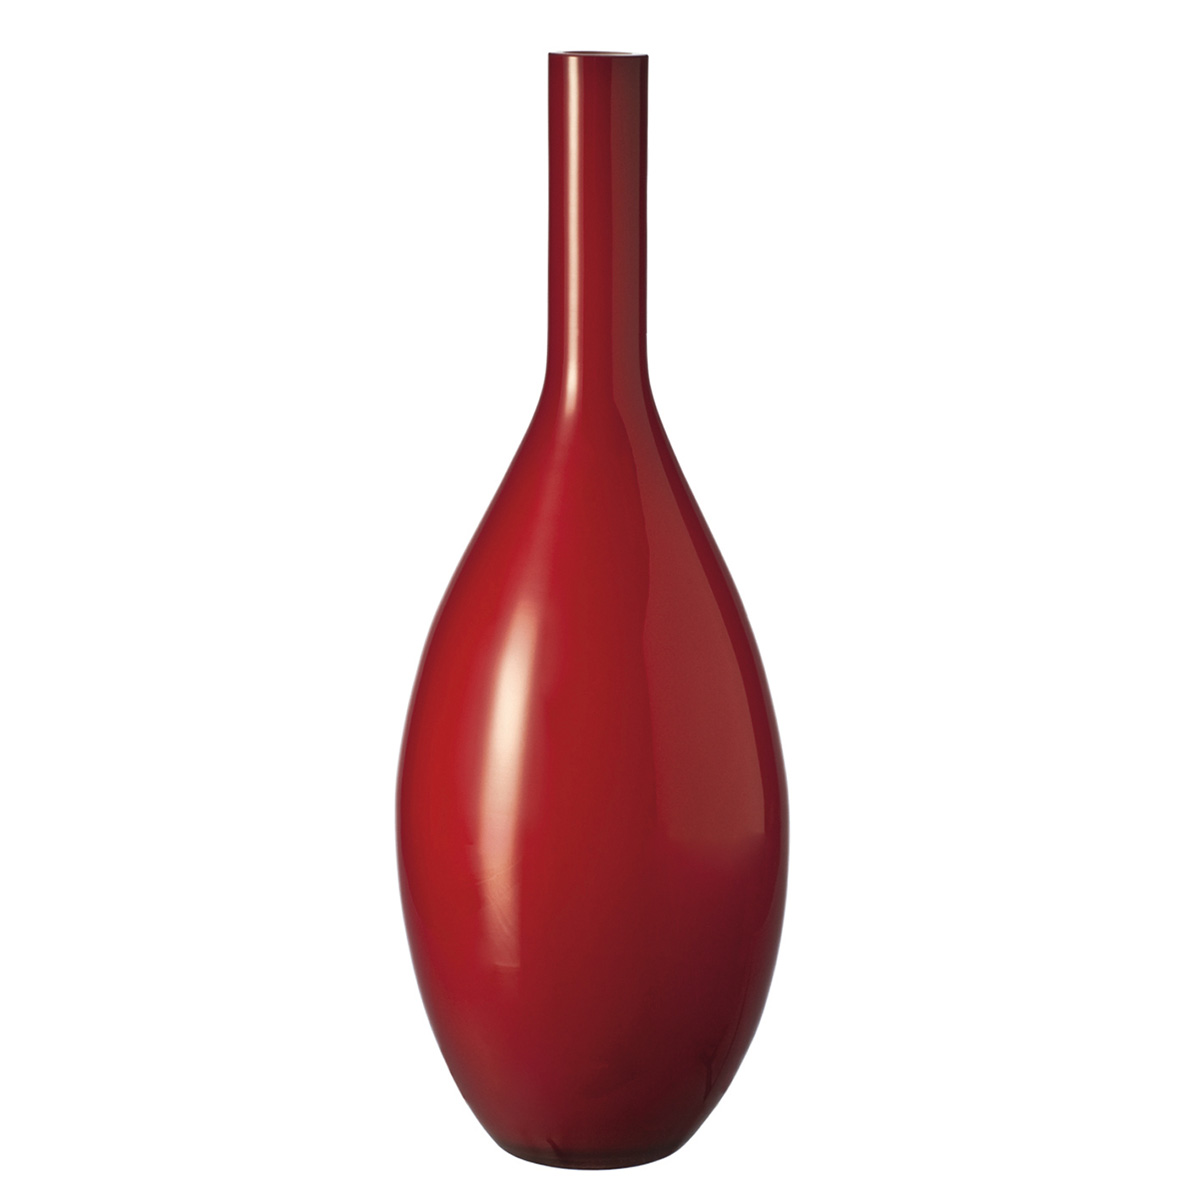 Vaza Beauty crvena 40654 